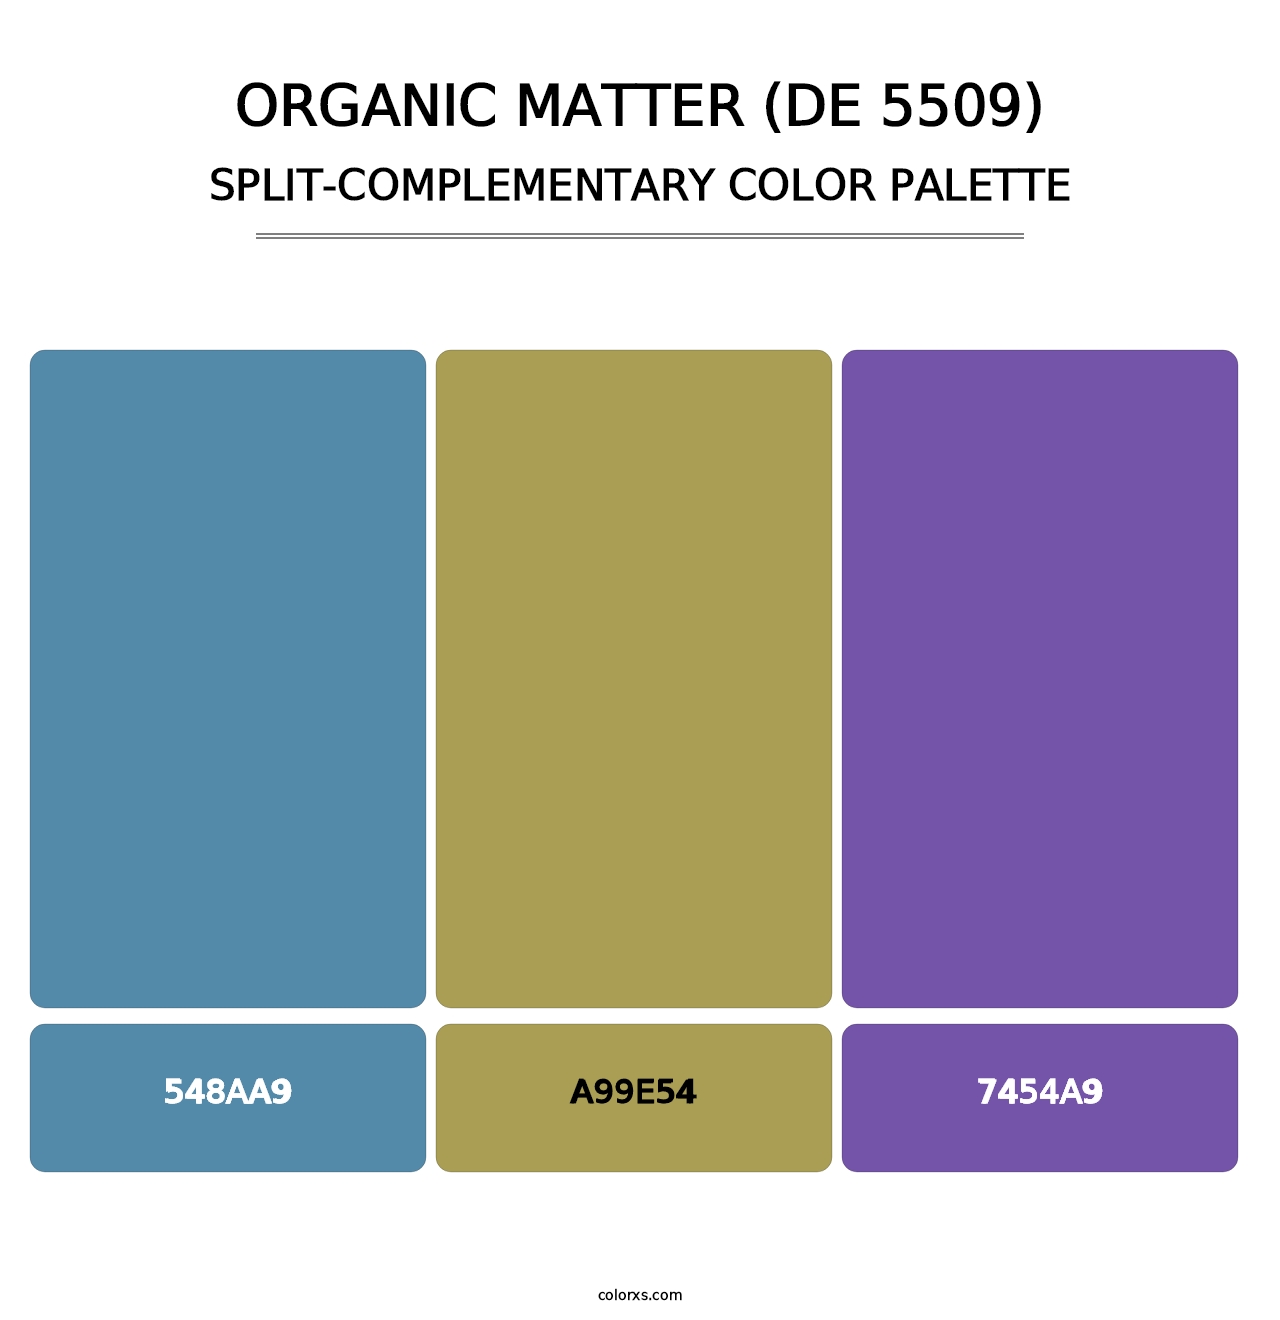 Organic Matter (DE 5509) - Split-Complementary Color Palette